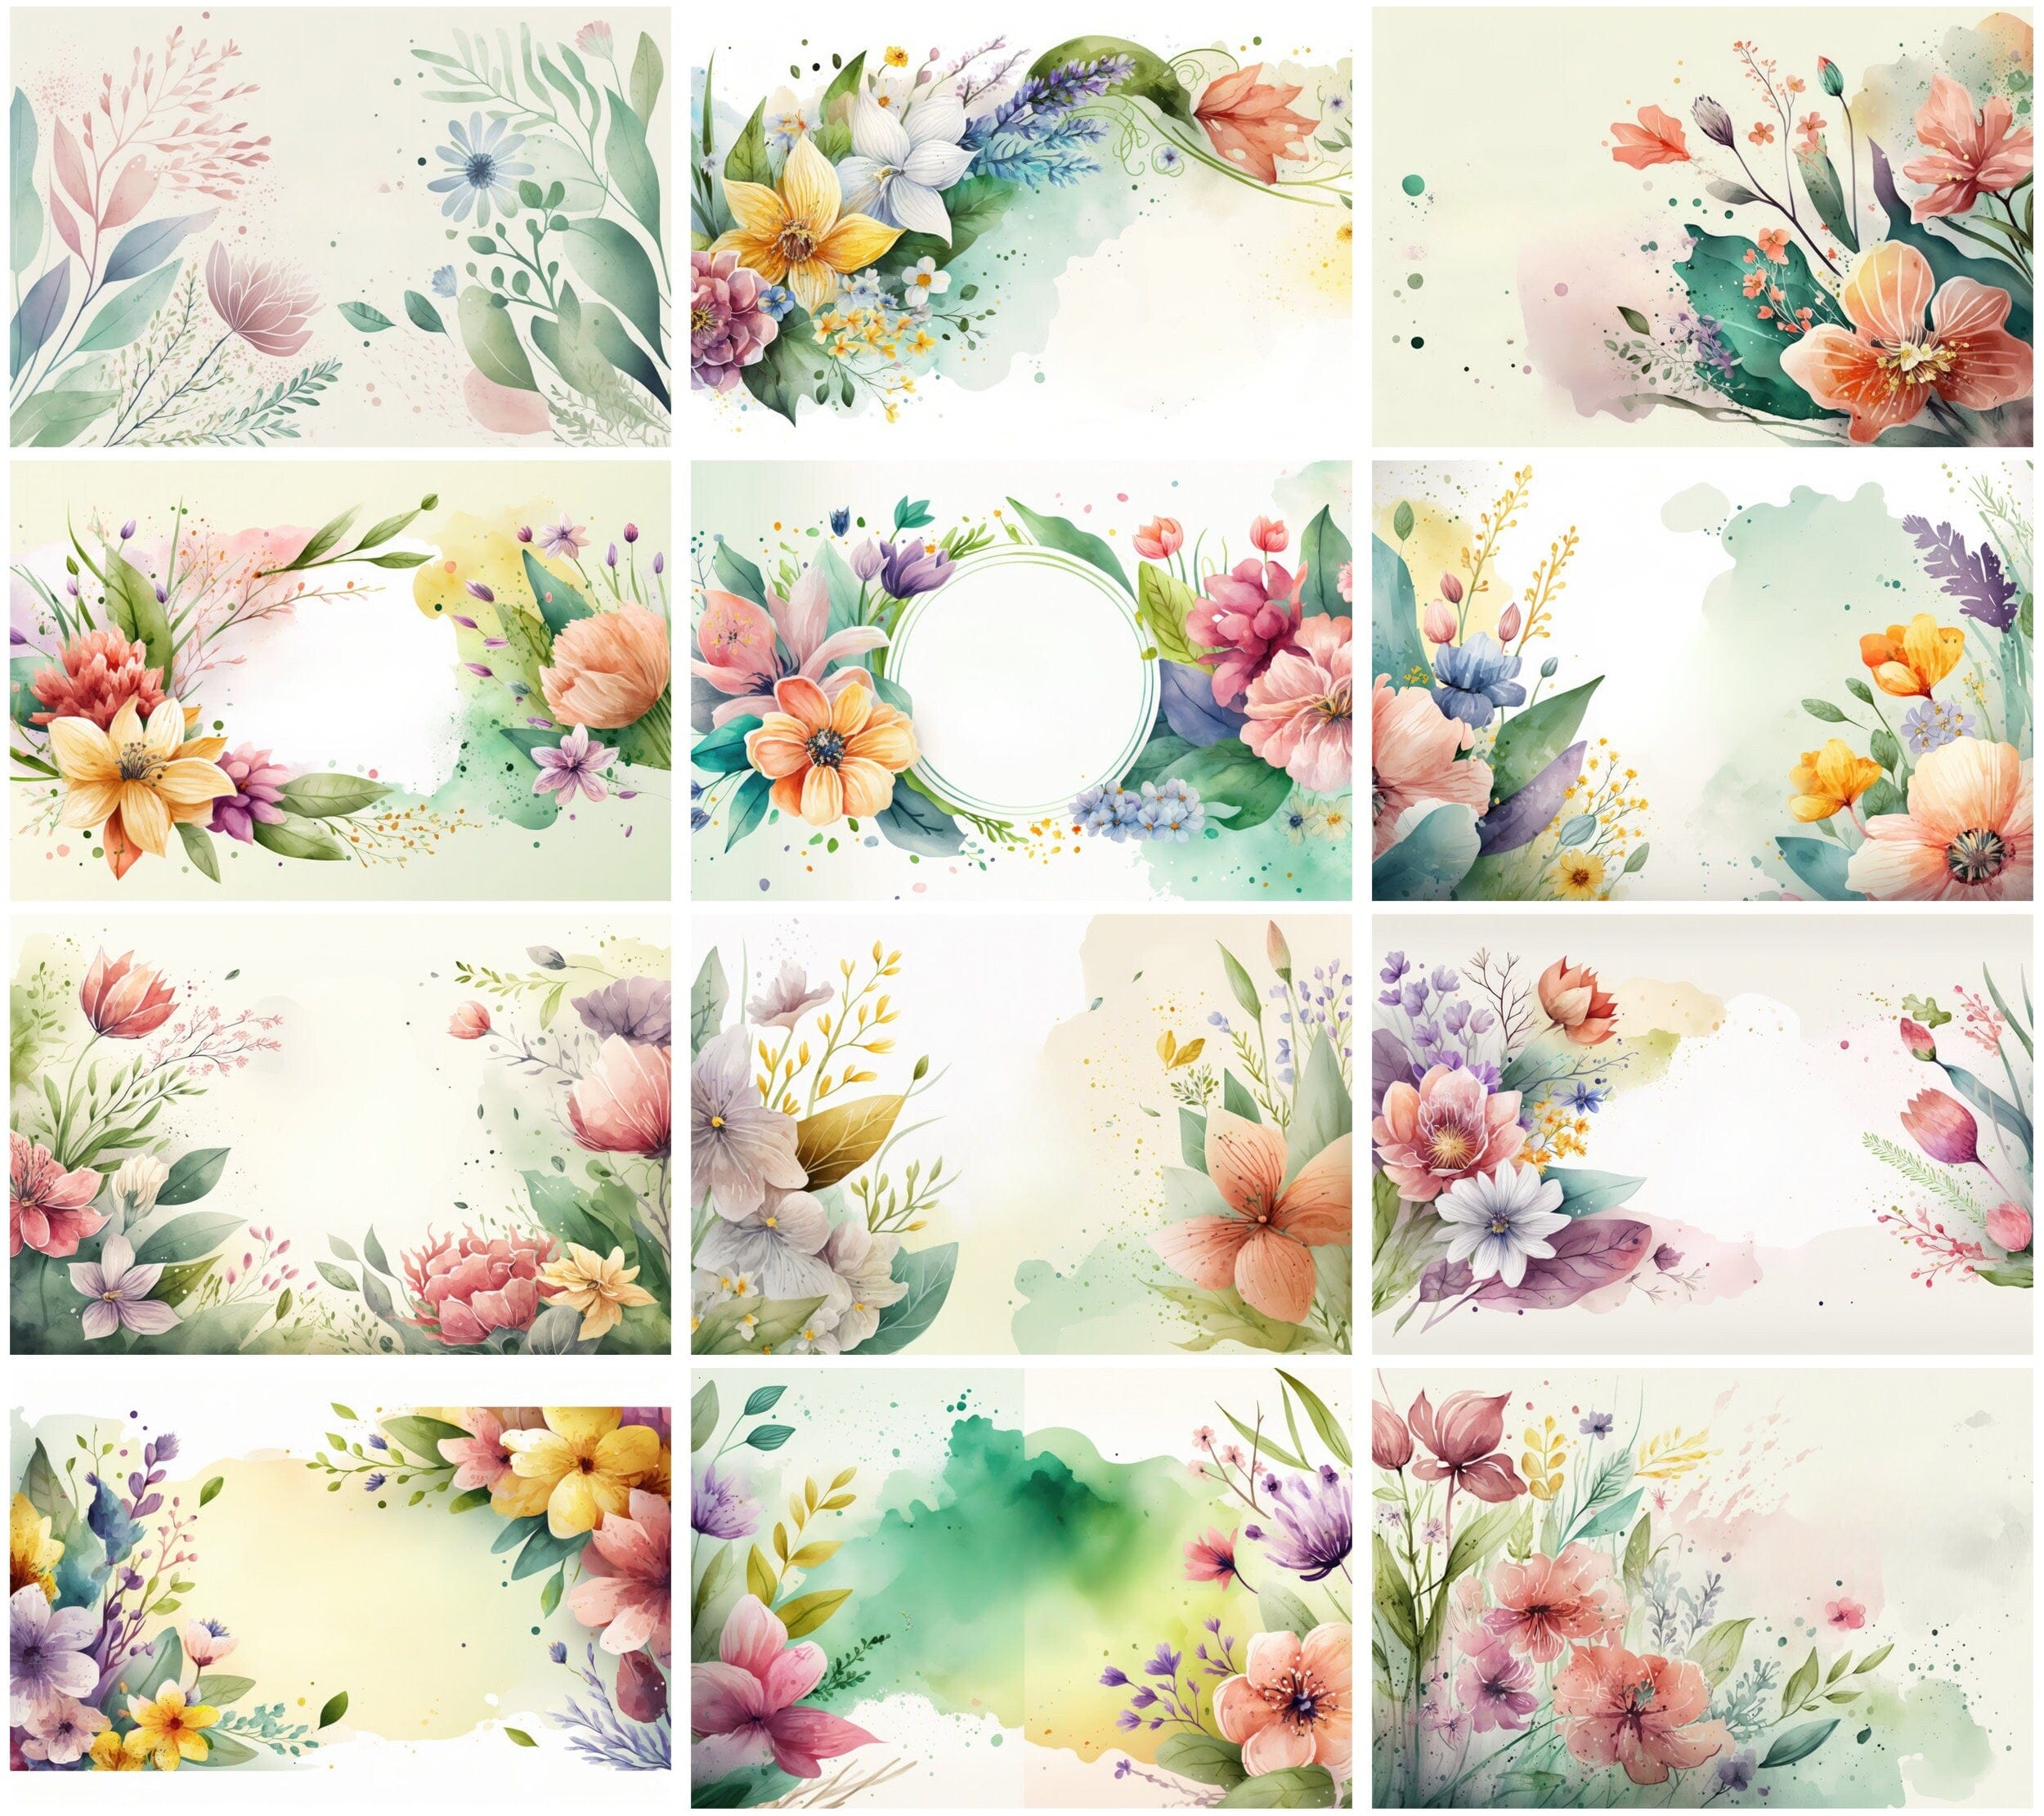 Spring & Floral Background Bundle - 100 High-Quality Digital Images for Scrapbooking, Invitations, Floral wedding invitation, Commercial use Digital Download Sumobundle